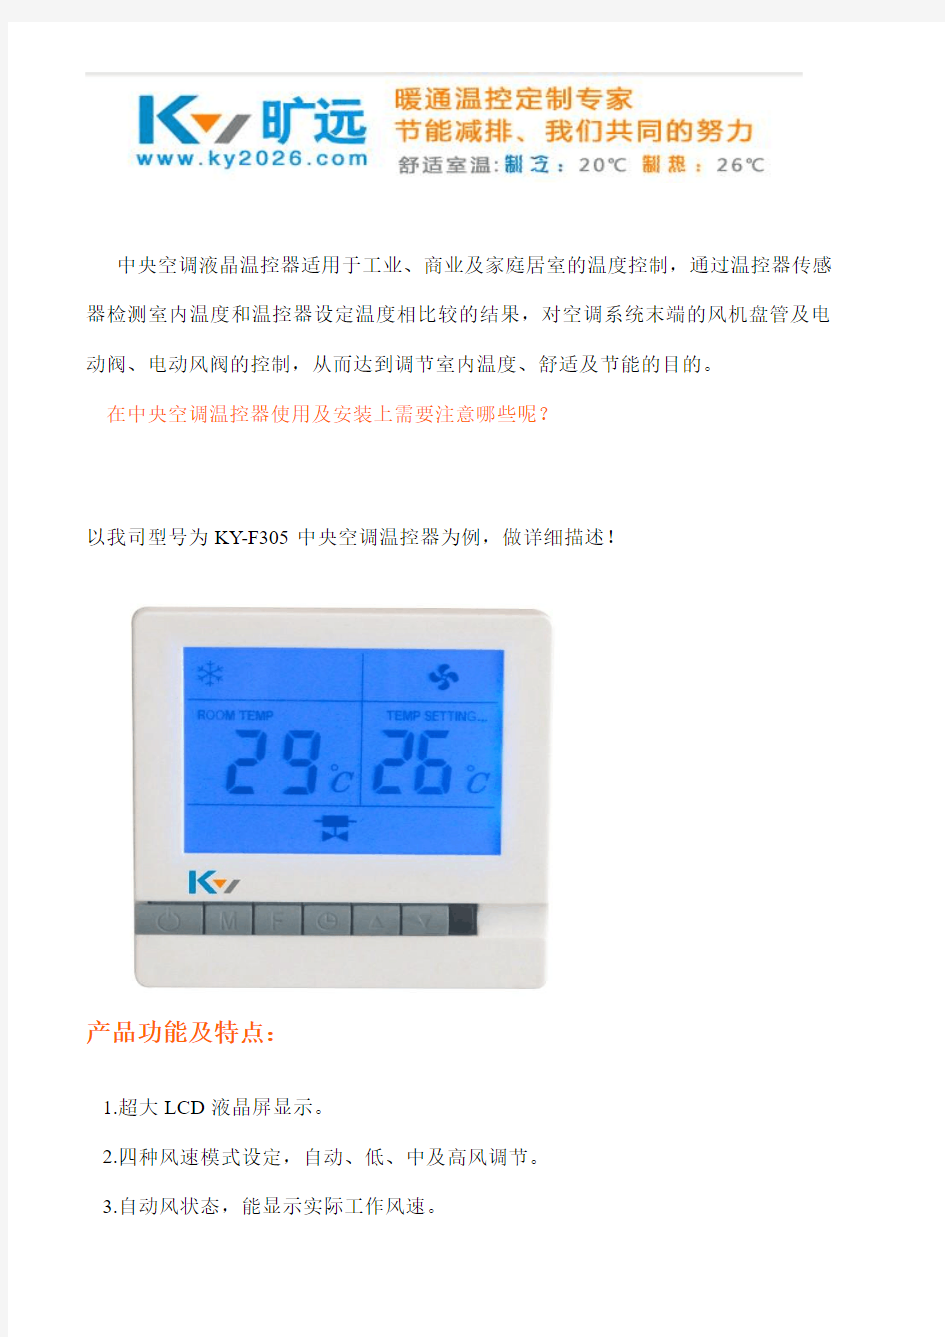 中央空调温控器的操作及安装注意事项